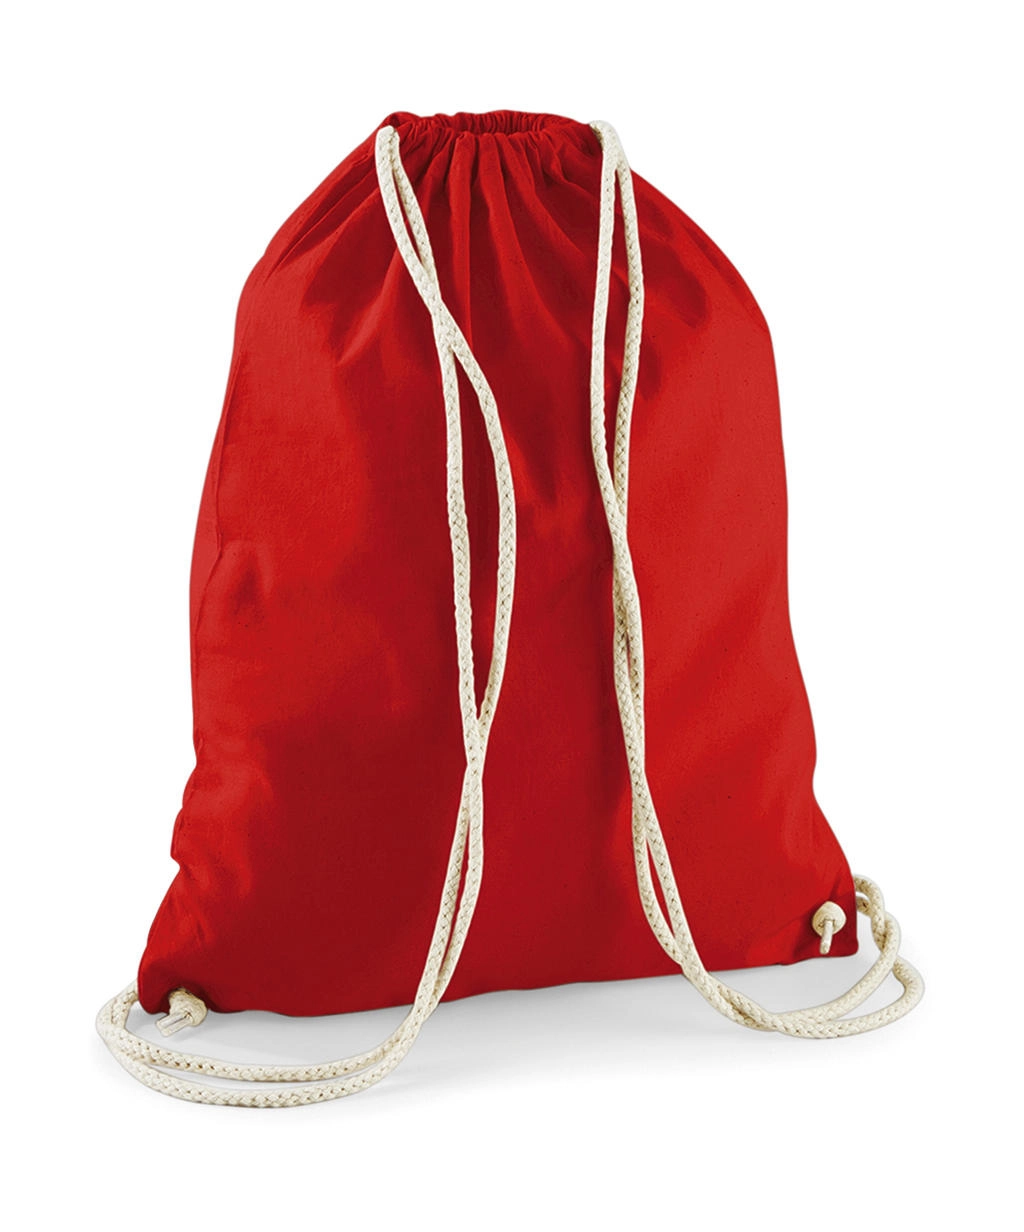 Cotton Gymsac zum Besticken und Bedrucken in der Farbe Bright Red mit Ihren Logo, Schriftzug oder Motiv.